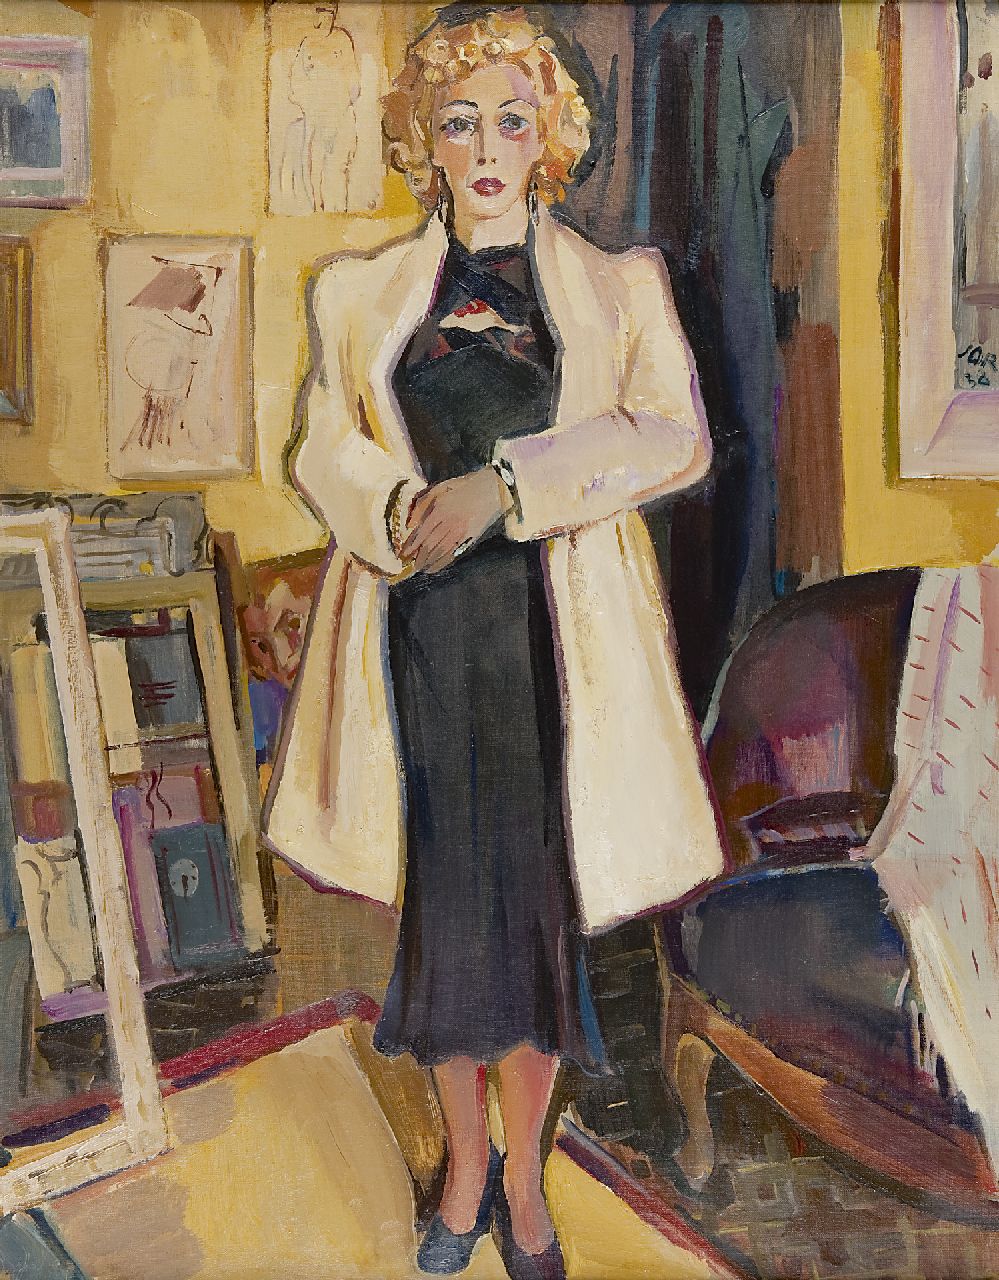 Jordens J.G.  | 'Jan' Gerrit Jordens, Vrouw in schildersinterieur, olieverf op doek 90,6 x 70,7 cm, gesigneerd rechts van het midden en gedateerd '38